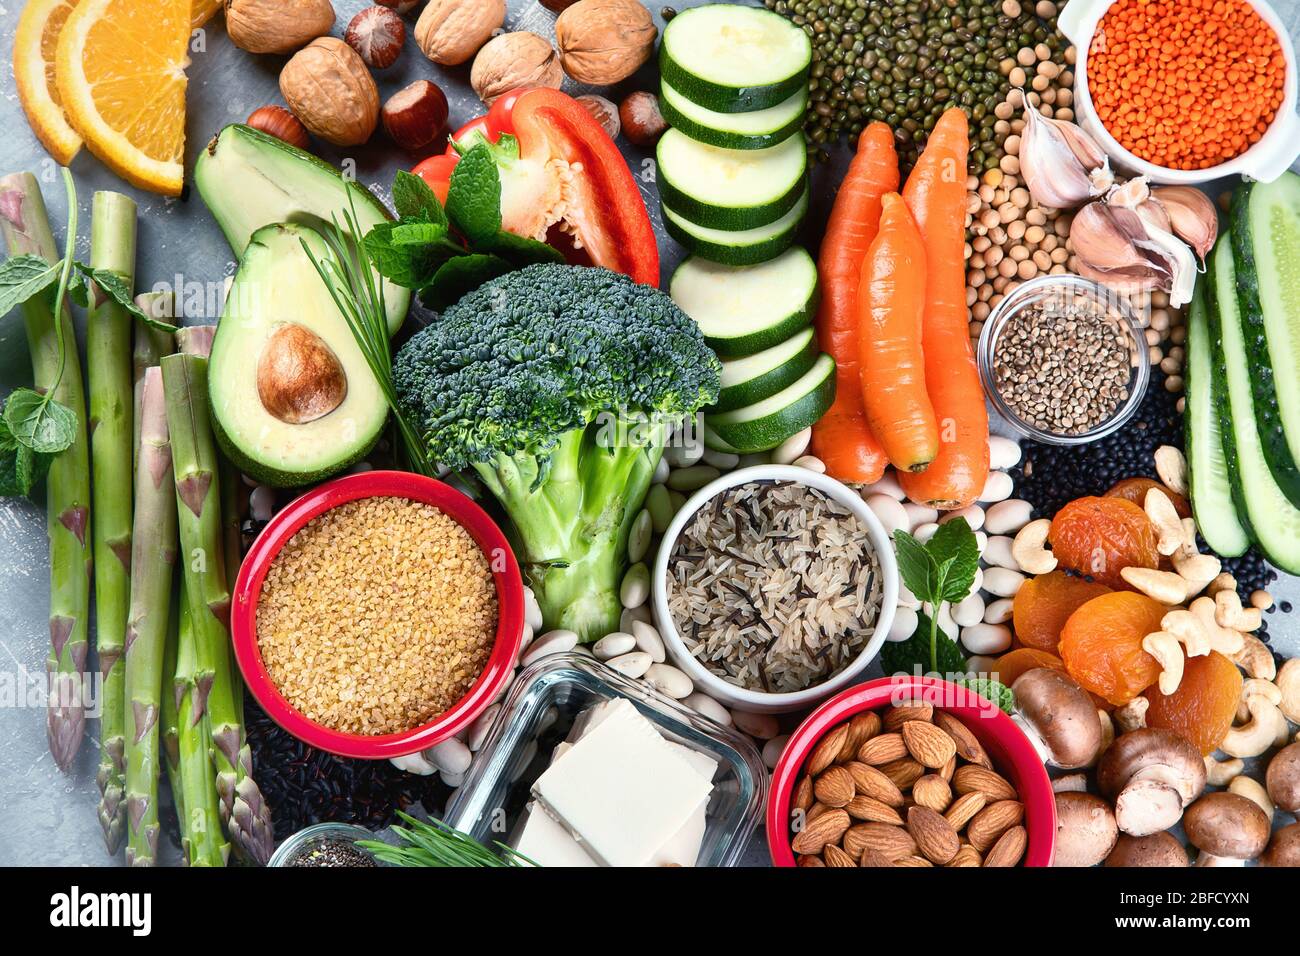 Dieta di proteina basata di pianta. Alimenti sani, ricchi di proteine vegetali, antiossidanti, vitamine e fibre alimentari. Vista dall'alto Foto Stock